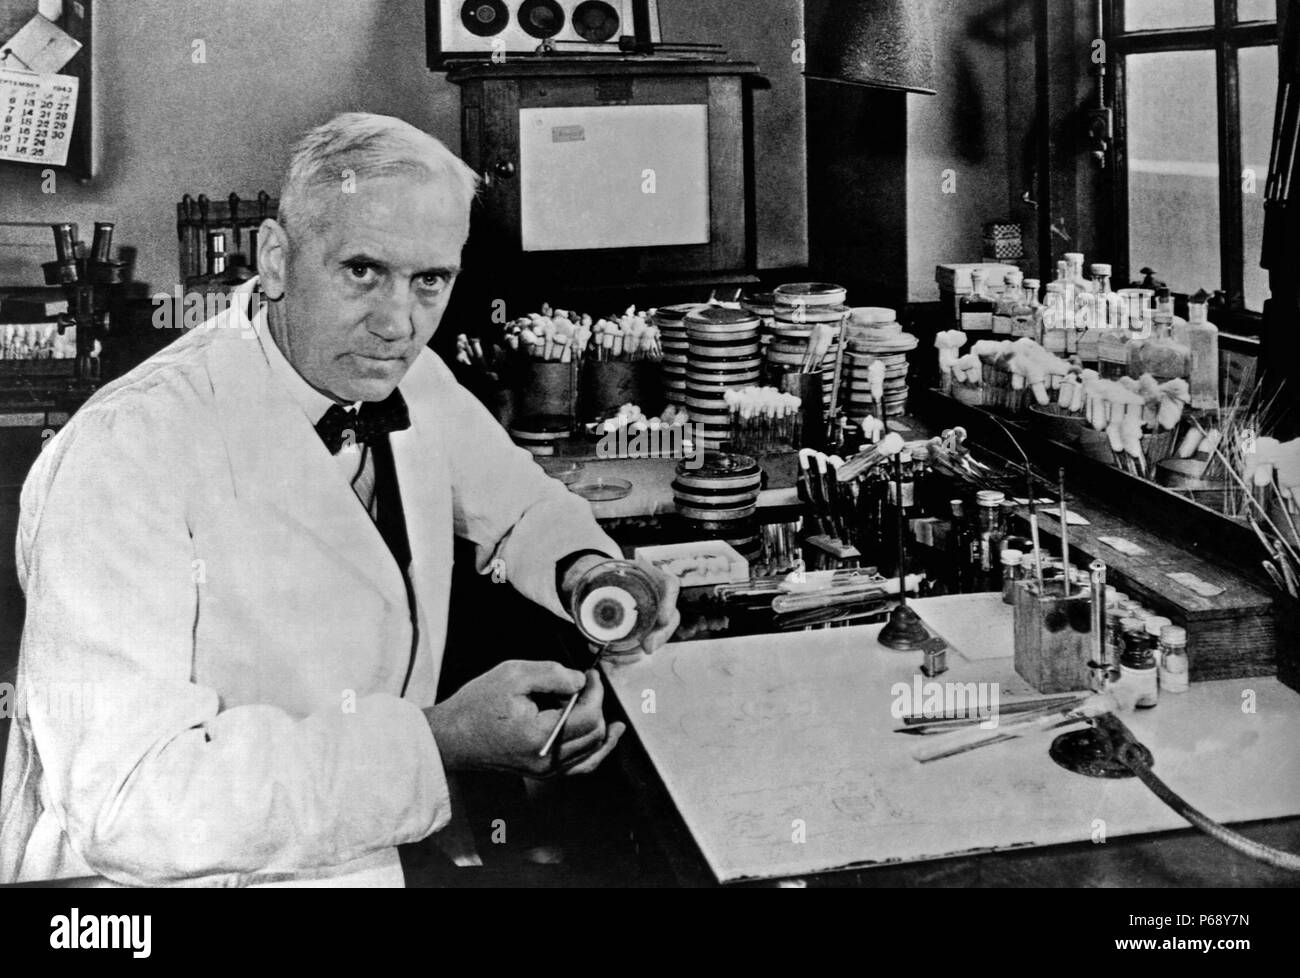 Sir Alexander Fleming, (6 agosto 1881 - 11 Marzo 1955) era un biologo scozzese, farmacologo e botanico che ha scoperto la penicillina Foto Stock